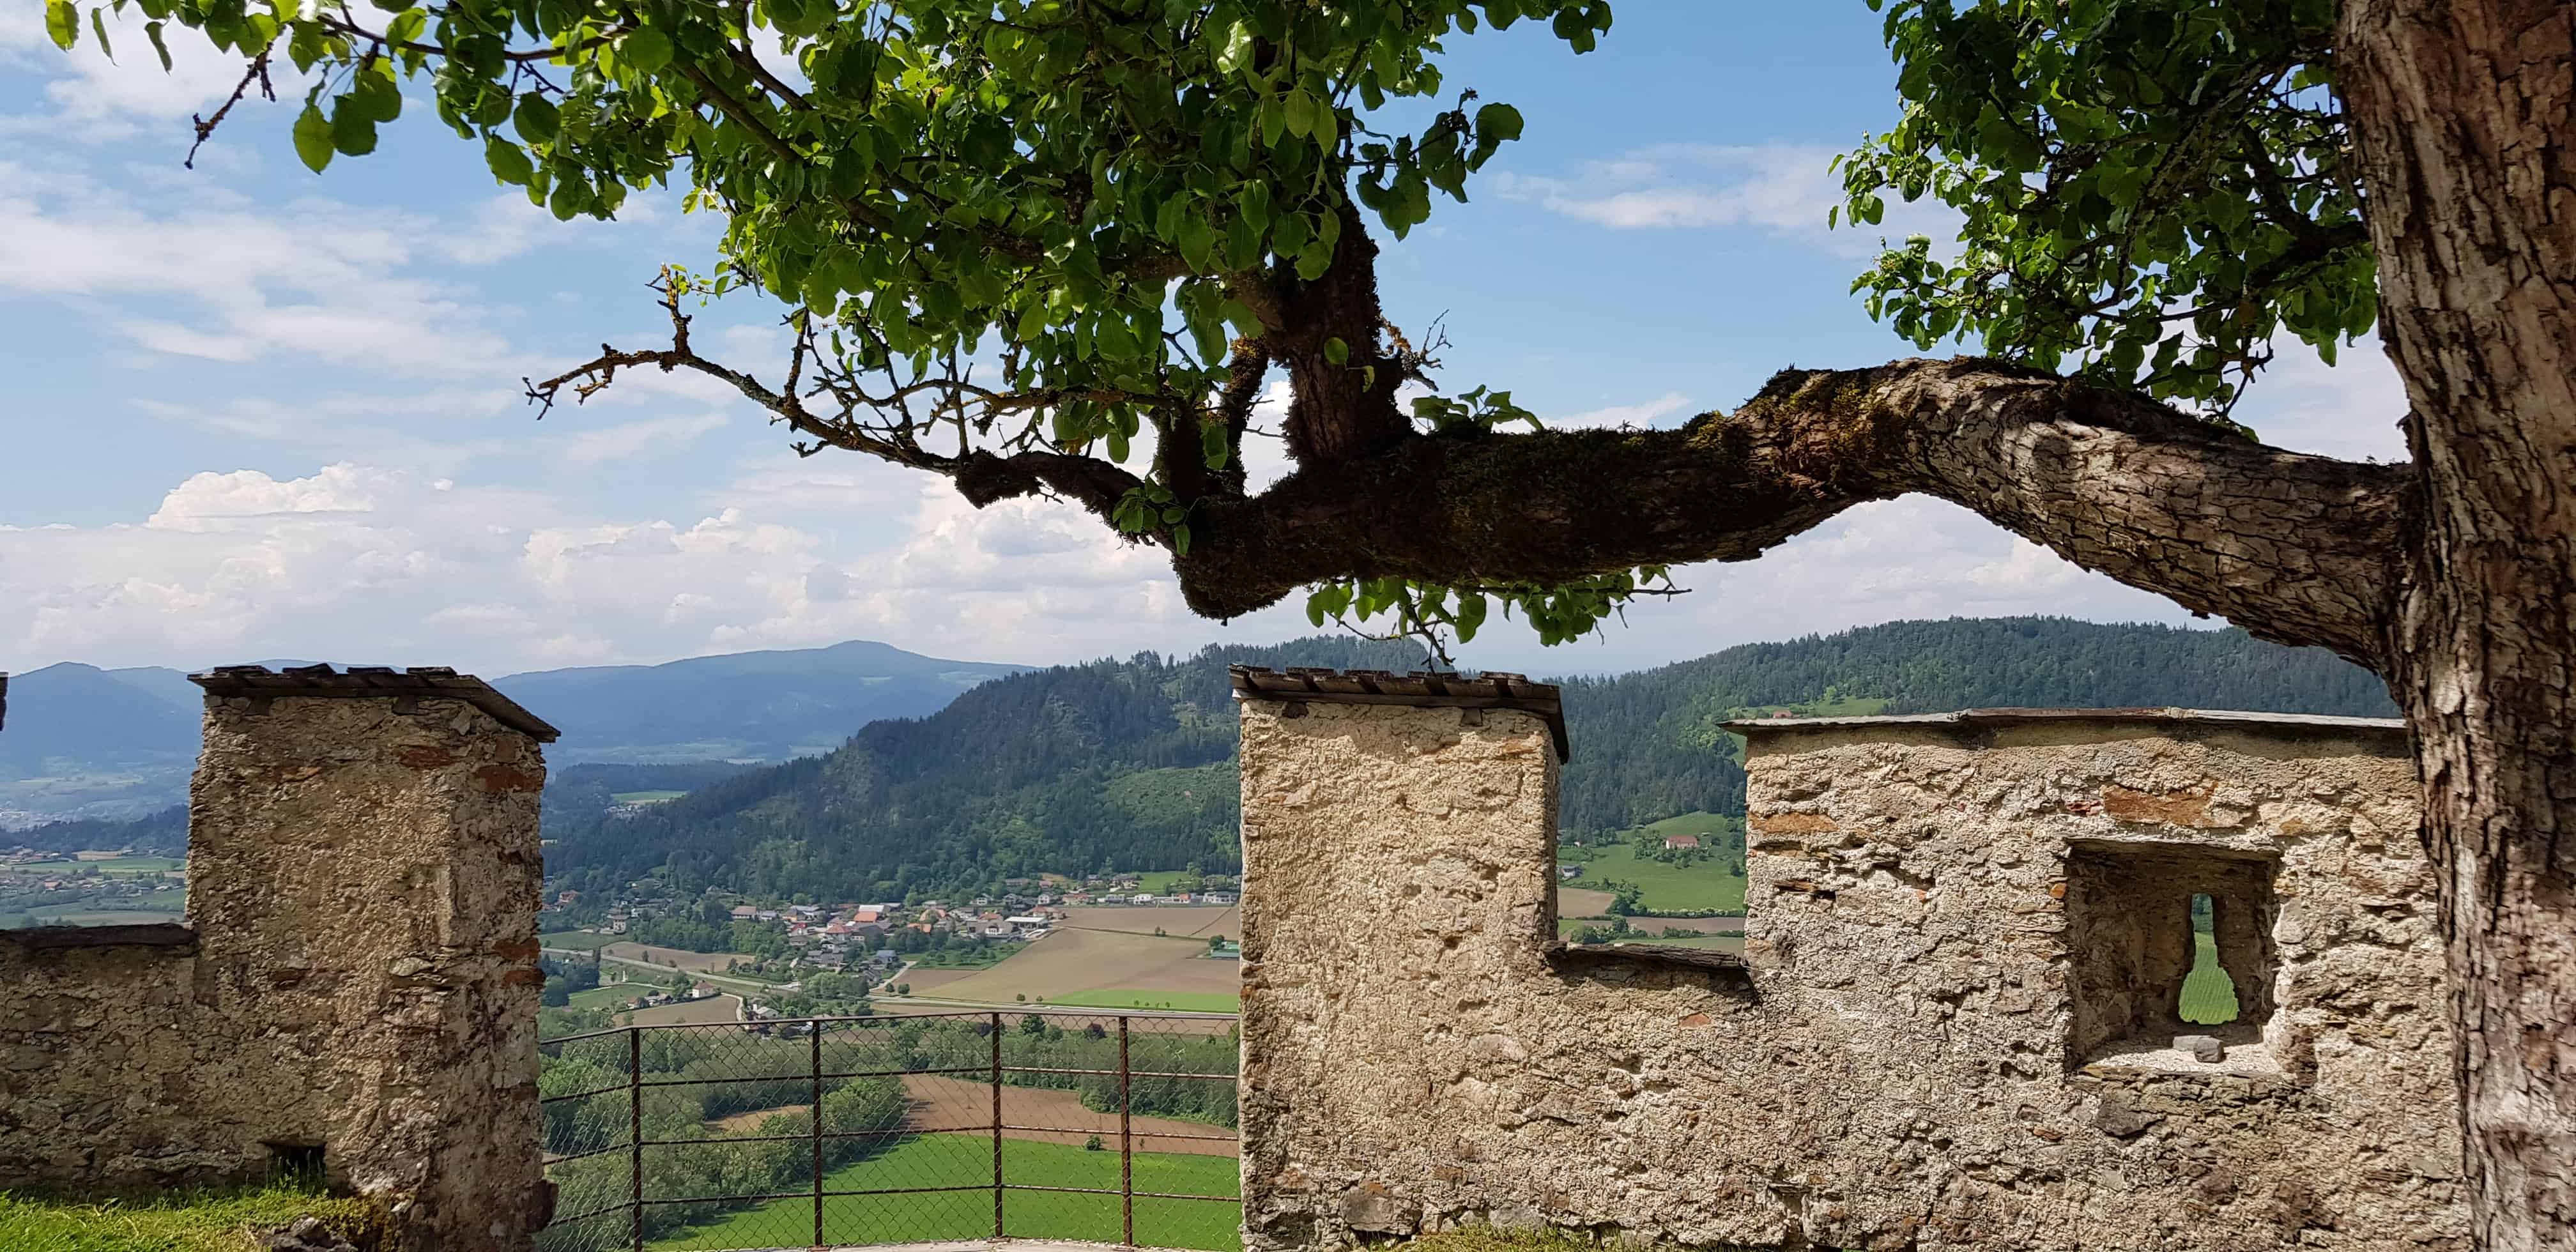 Familienfreundliche Wanderung auf die Burg Hochosterwitz in Kärnten mit schönen Panorama-Aussichtspunkten und Rastmöglichkeiten